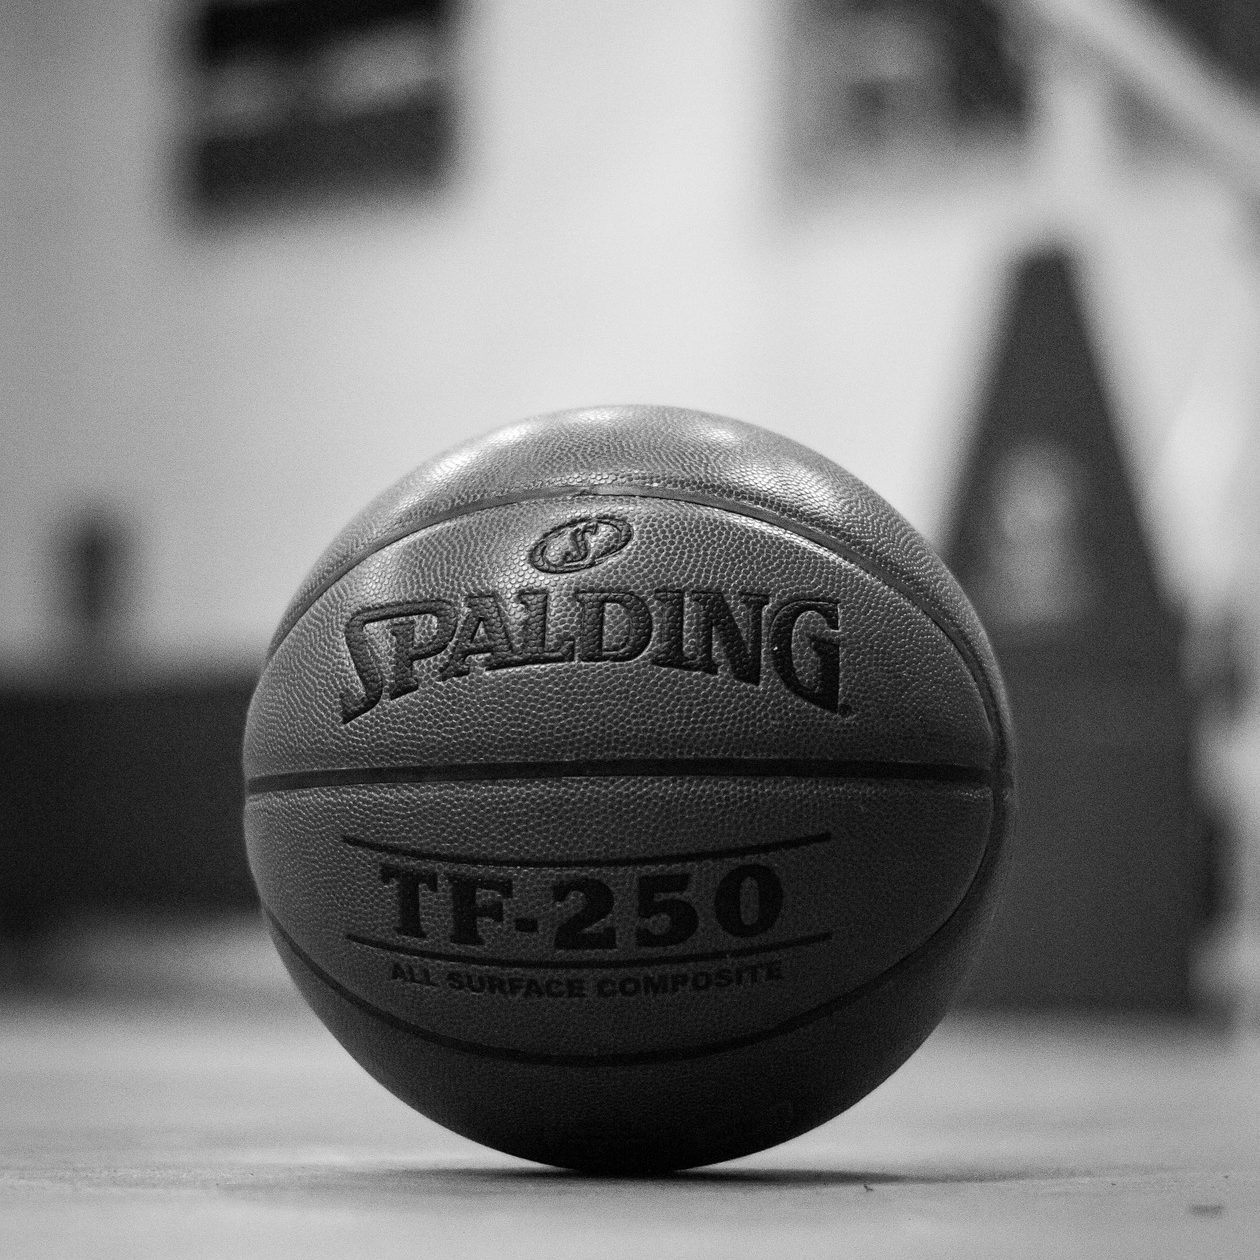 basket-ball-1343018_1920